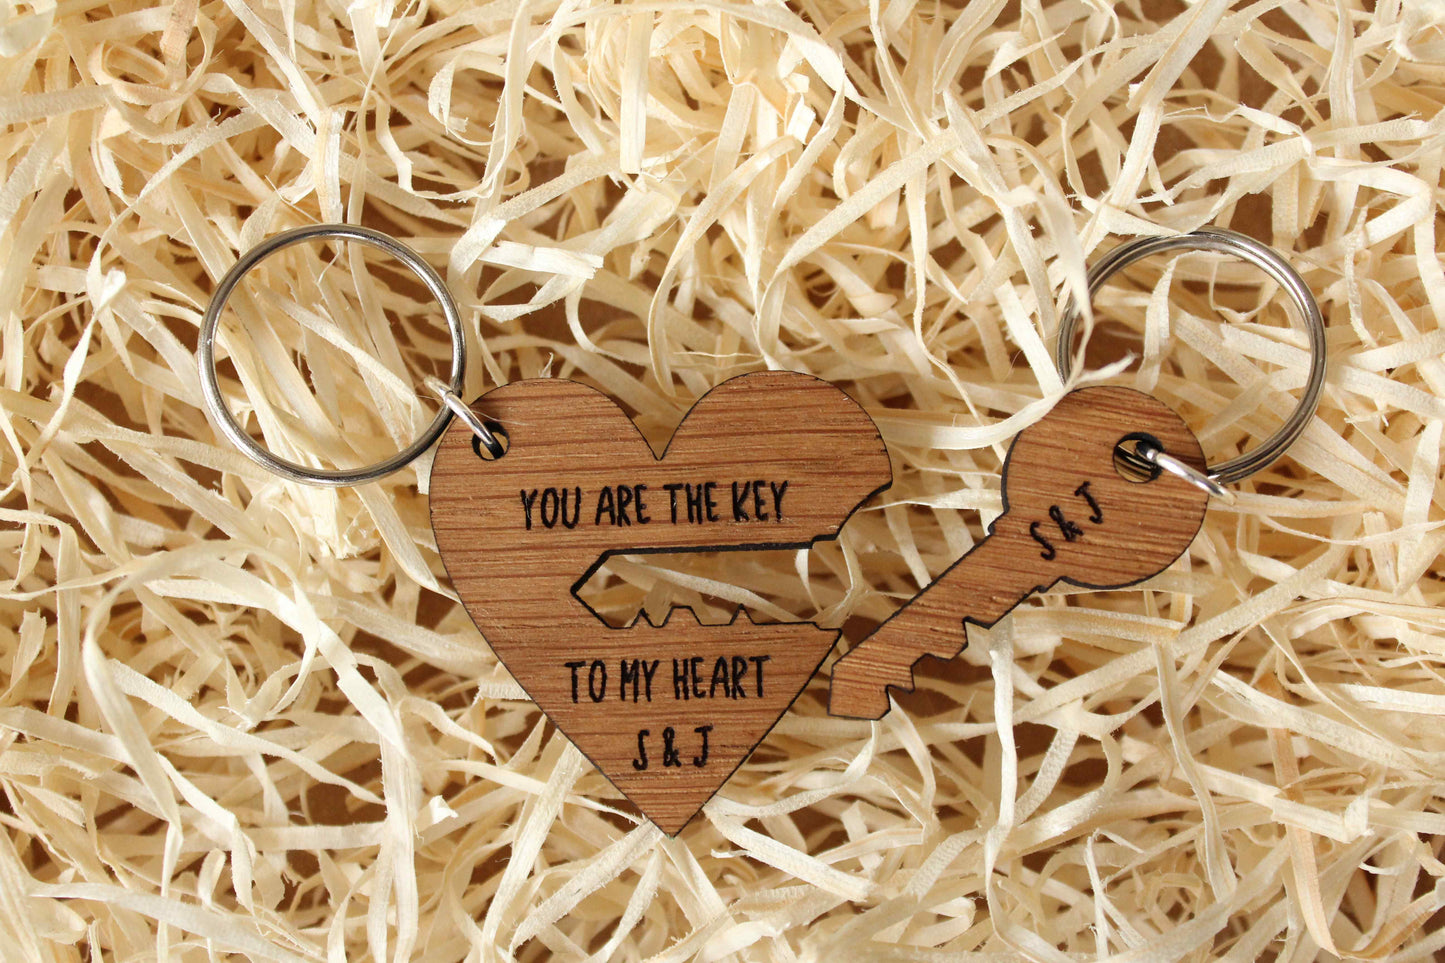 Portachiavi in legno Bud Spencer gadget Wooden keychain gift con omaggio a  sorpresa -  Italia